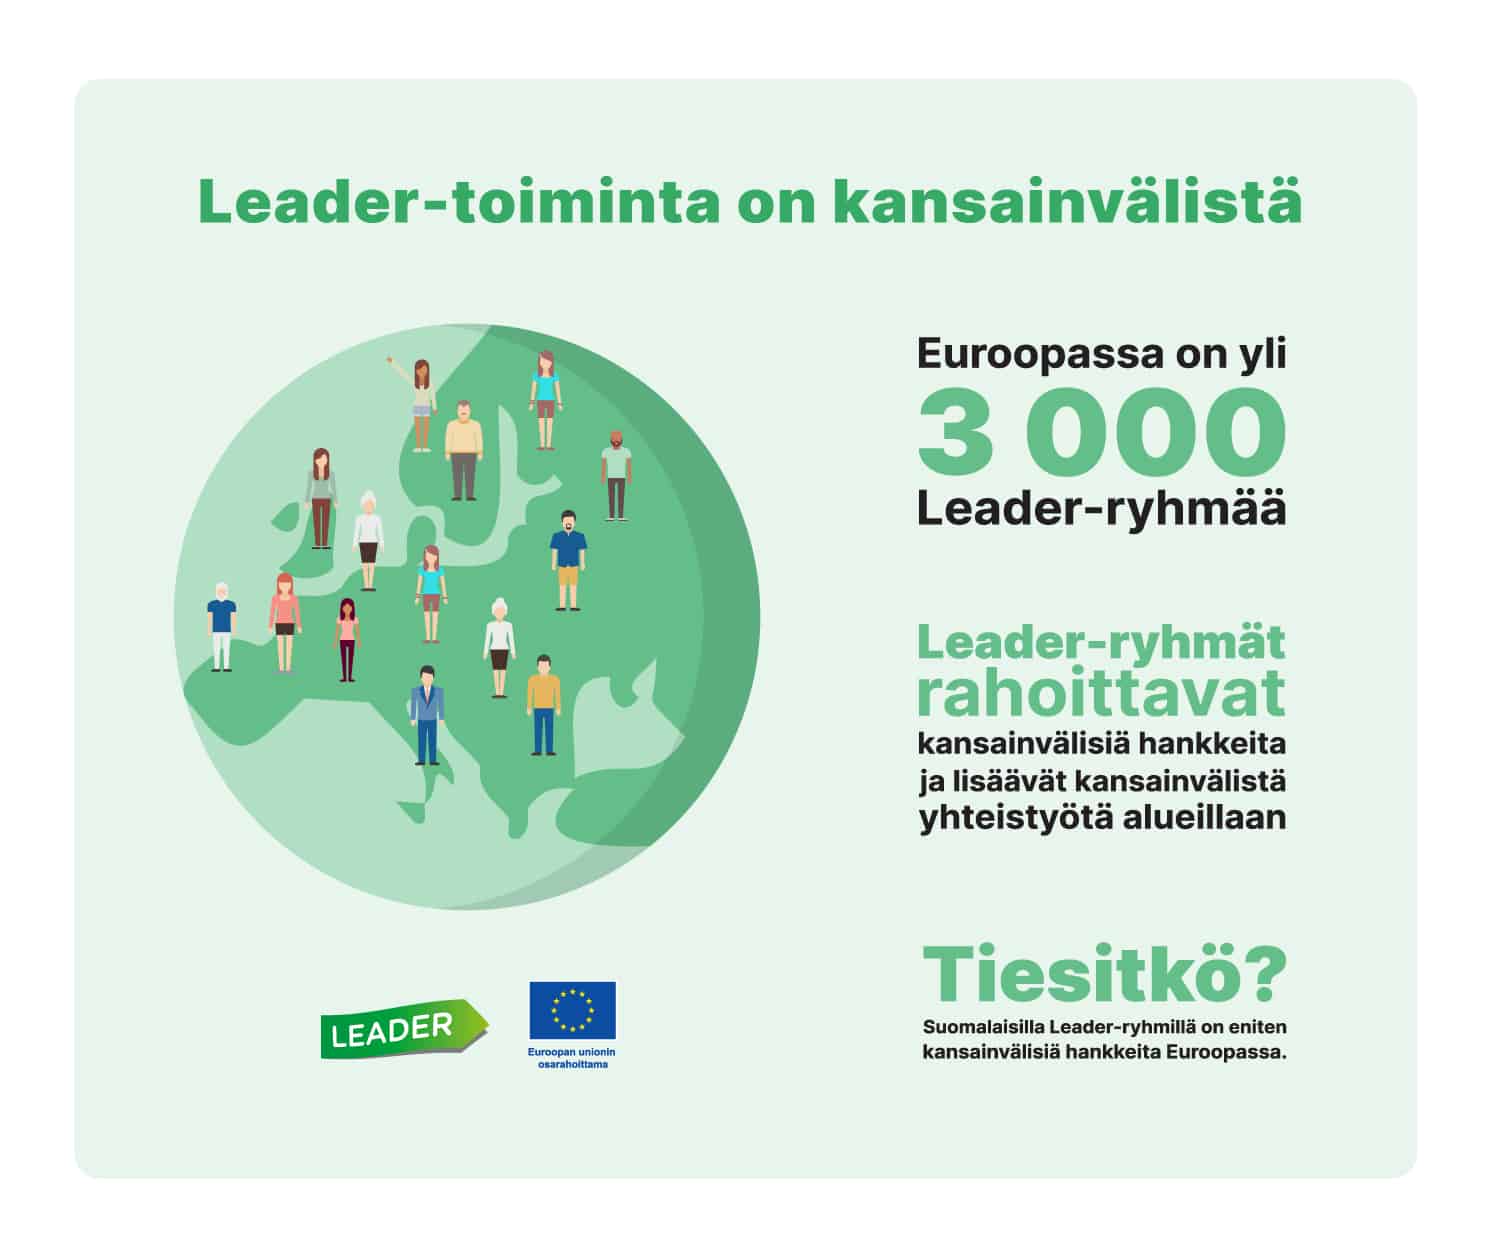 Leader-toiminta on kansainvälistä. Euroopassa on yli 3000 Leader-ryhmää. Leader-ryhmät rahoittavat kansainvälisiä hankkeita ja lisäävät kansainvälistä yhteistyötä alueillaan. Tiesitkö: Suomalaisilla Leader-ryhmillä on eniten kansainvälisiä hankkeita Euroopassa.